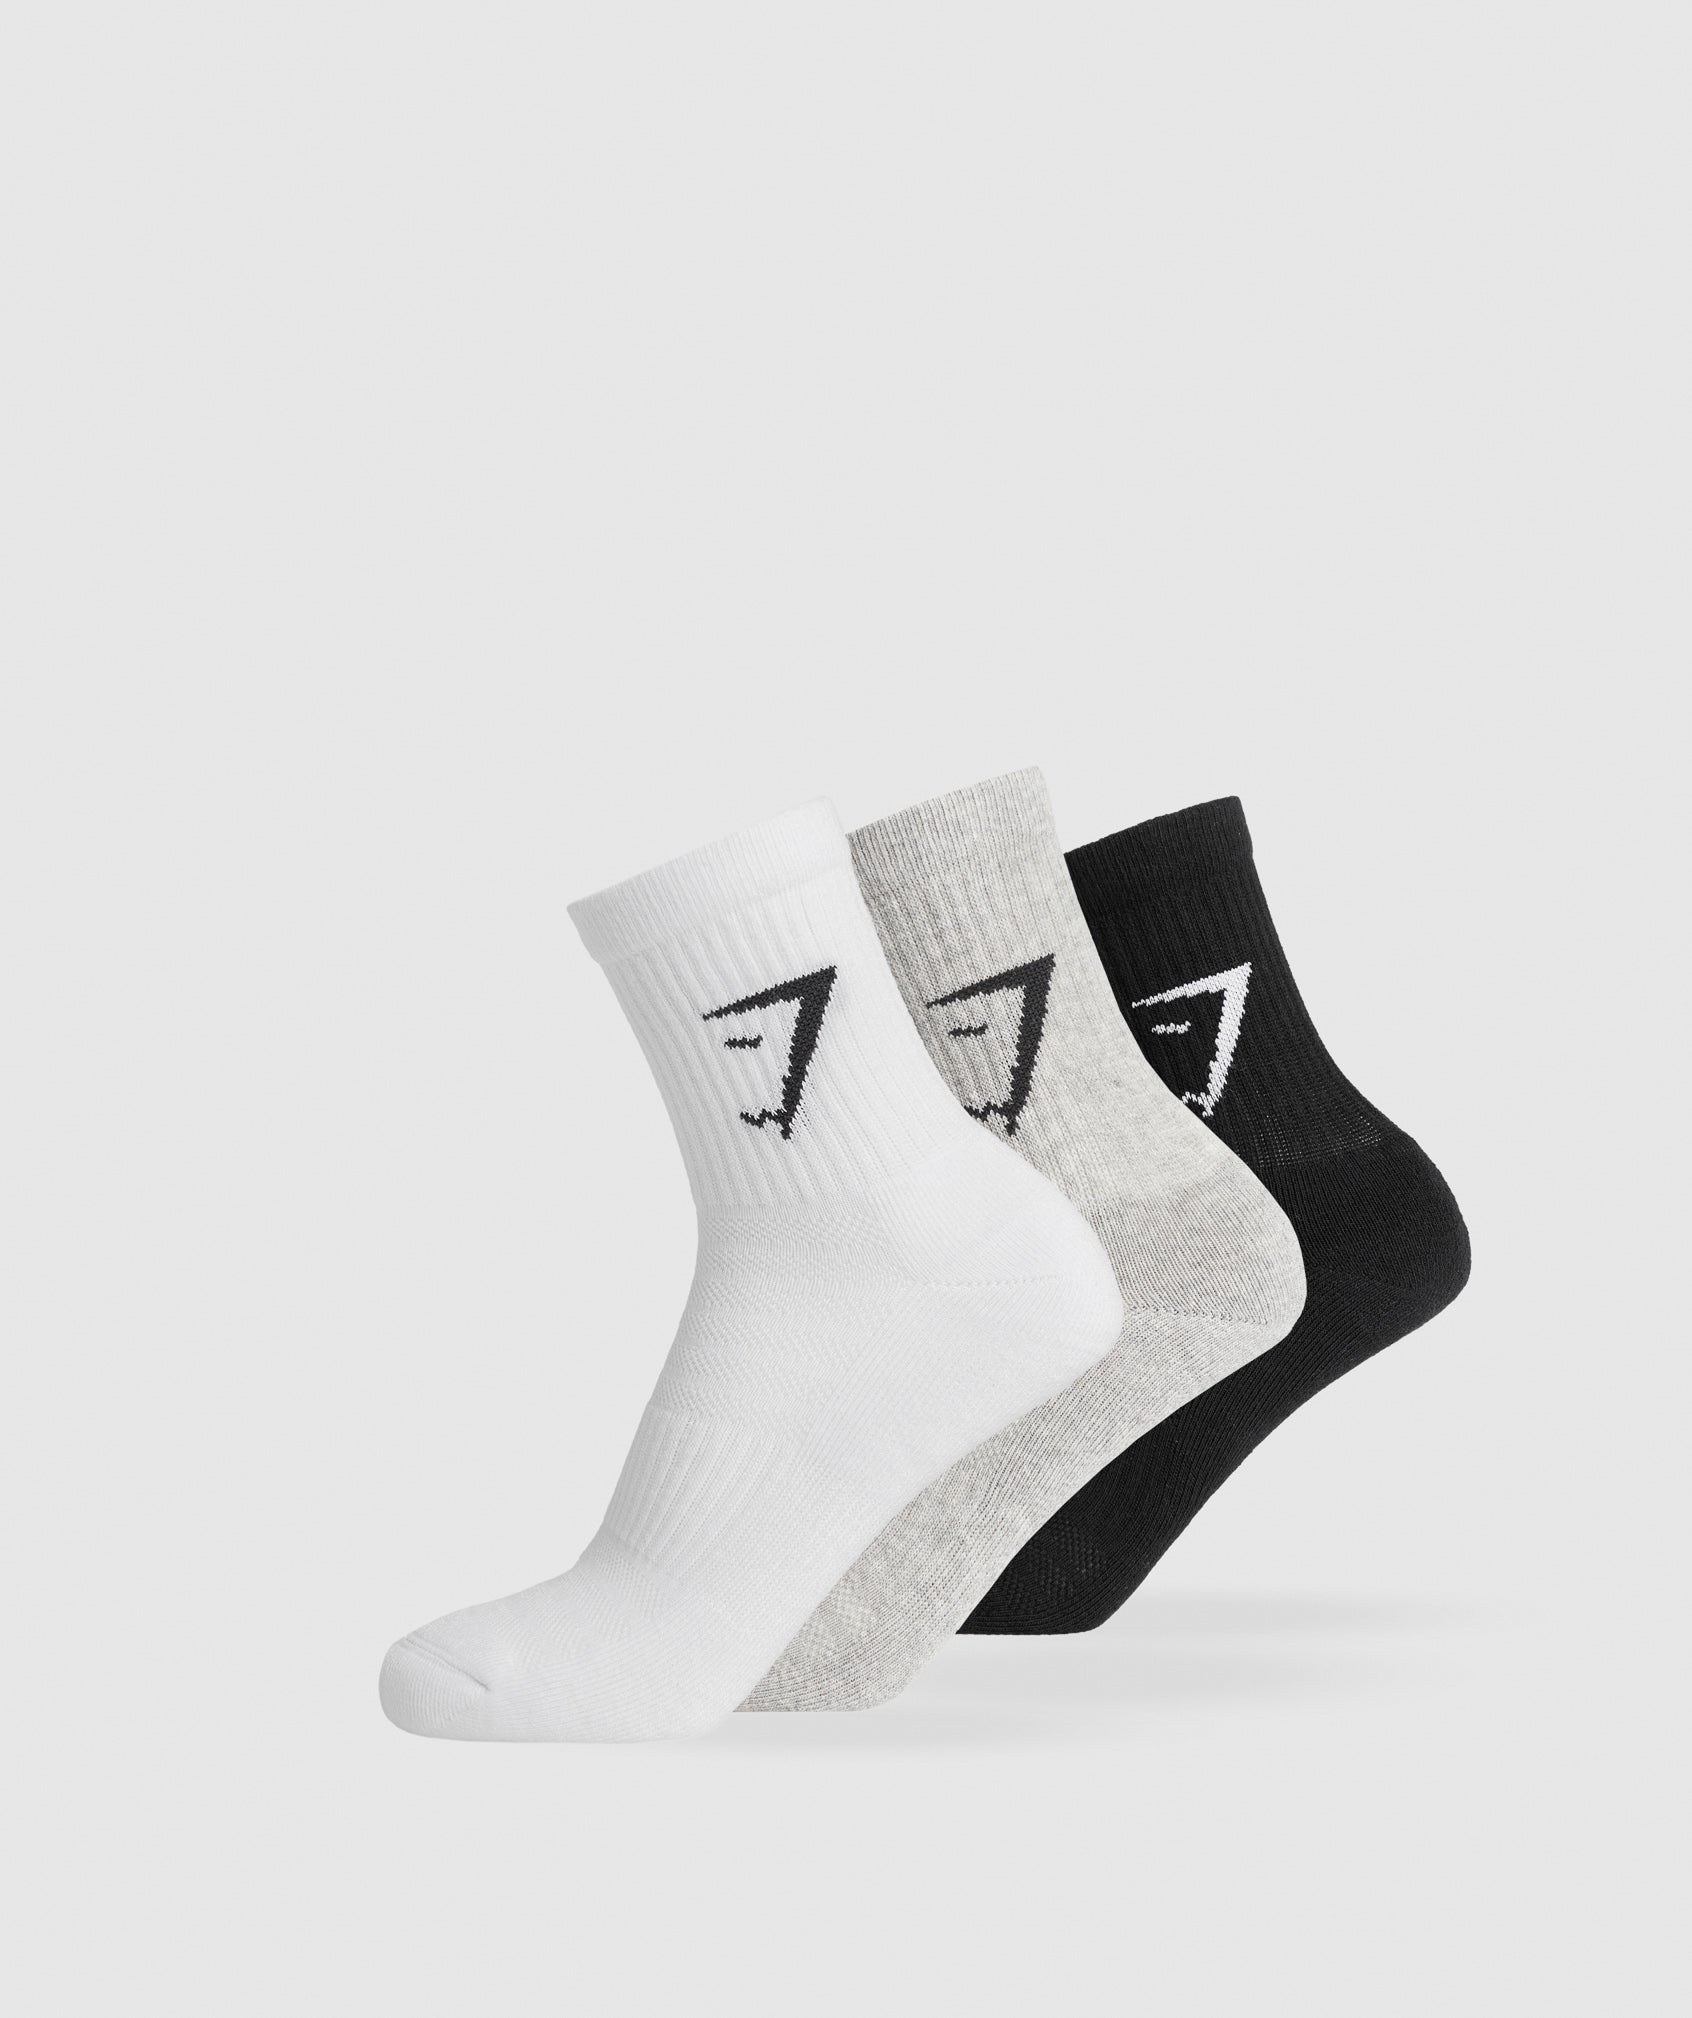 Midi 3pk Socks in White/Light Grey Core Marl/Black